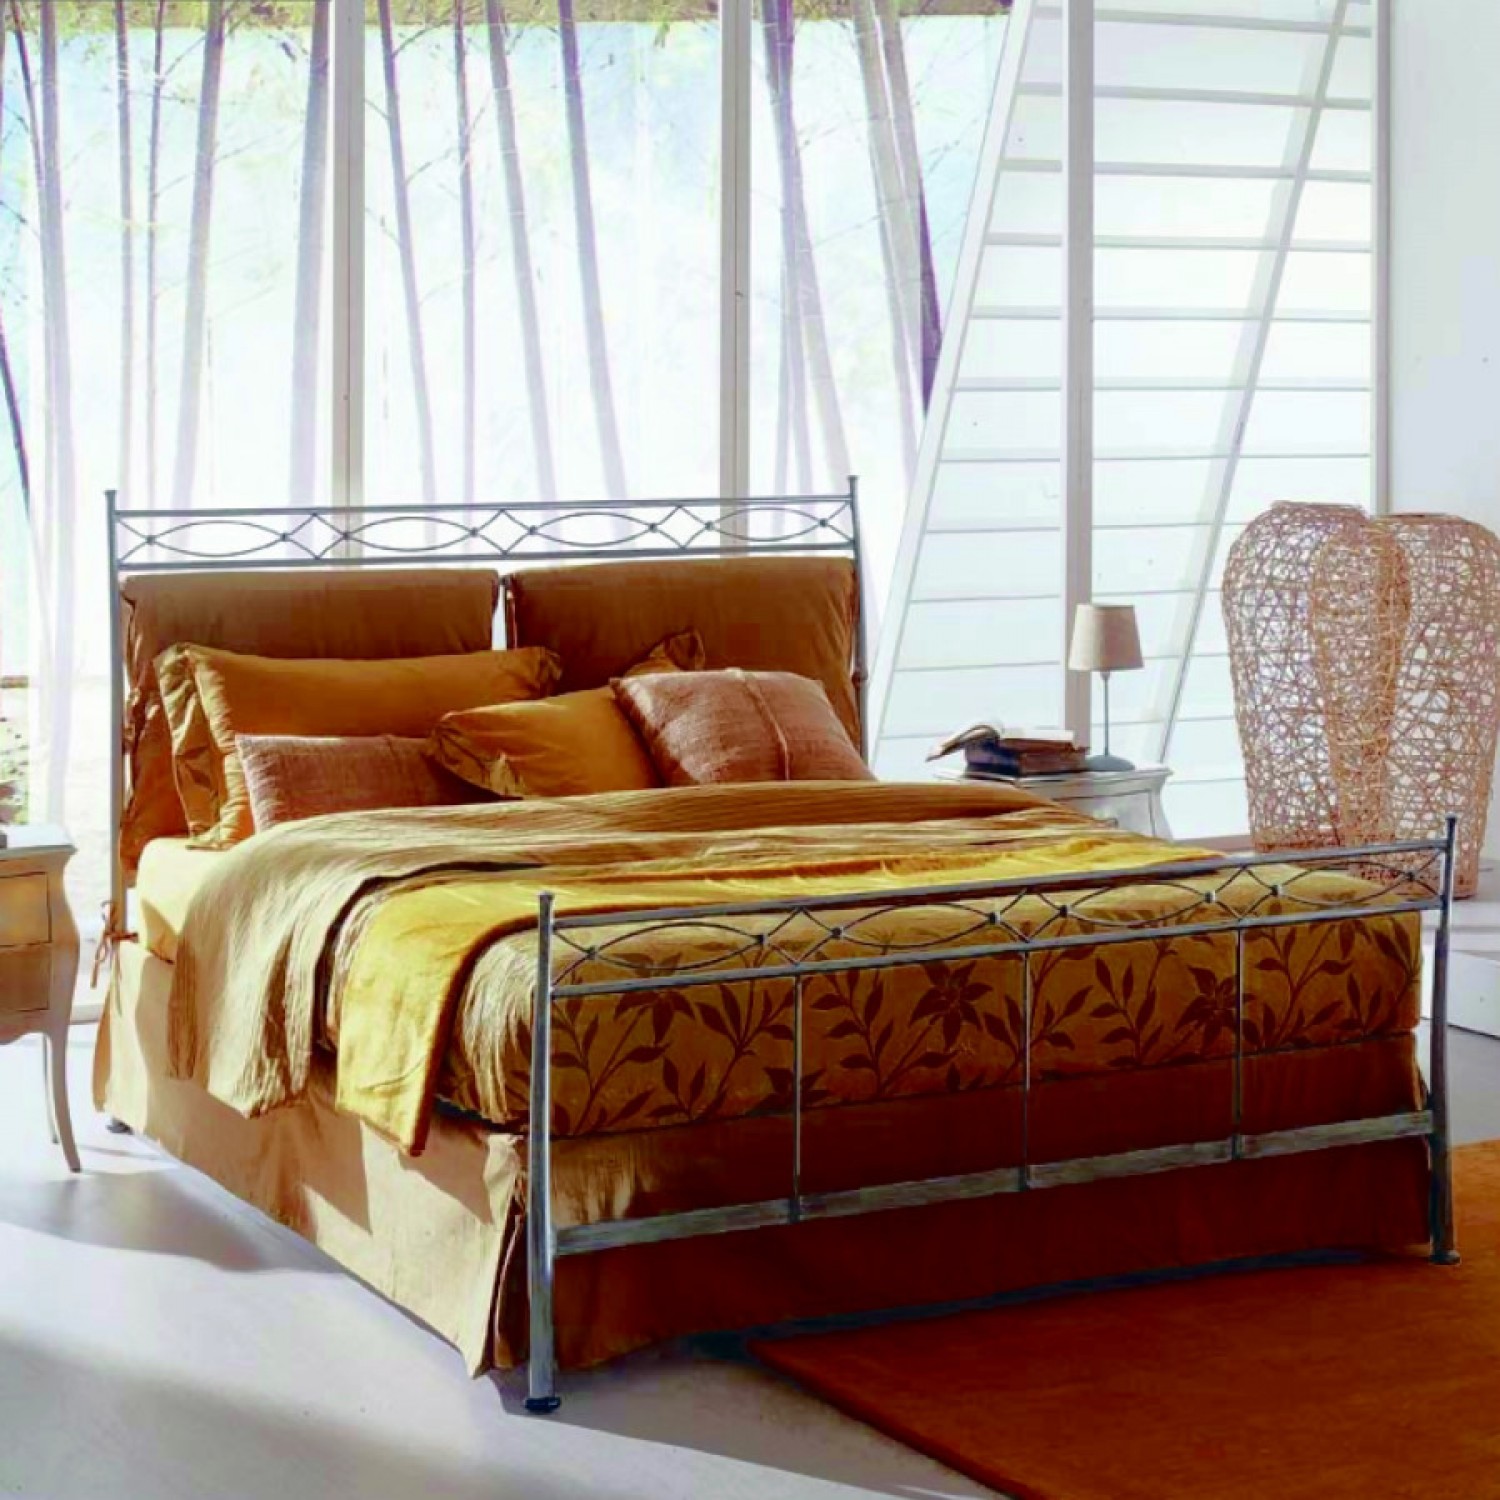 кованые кровати фото дизайн